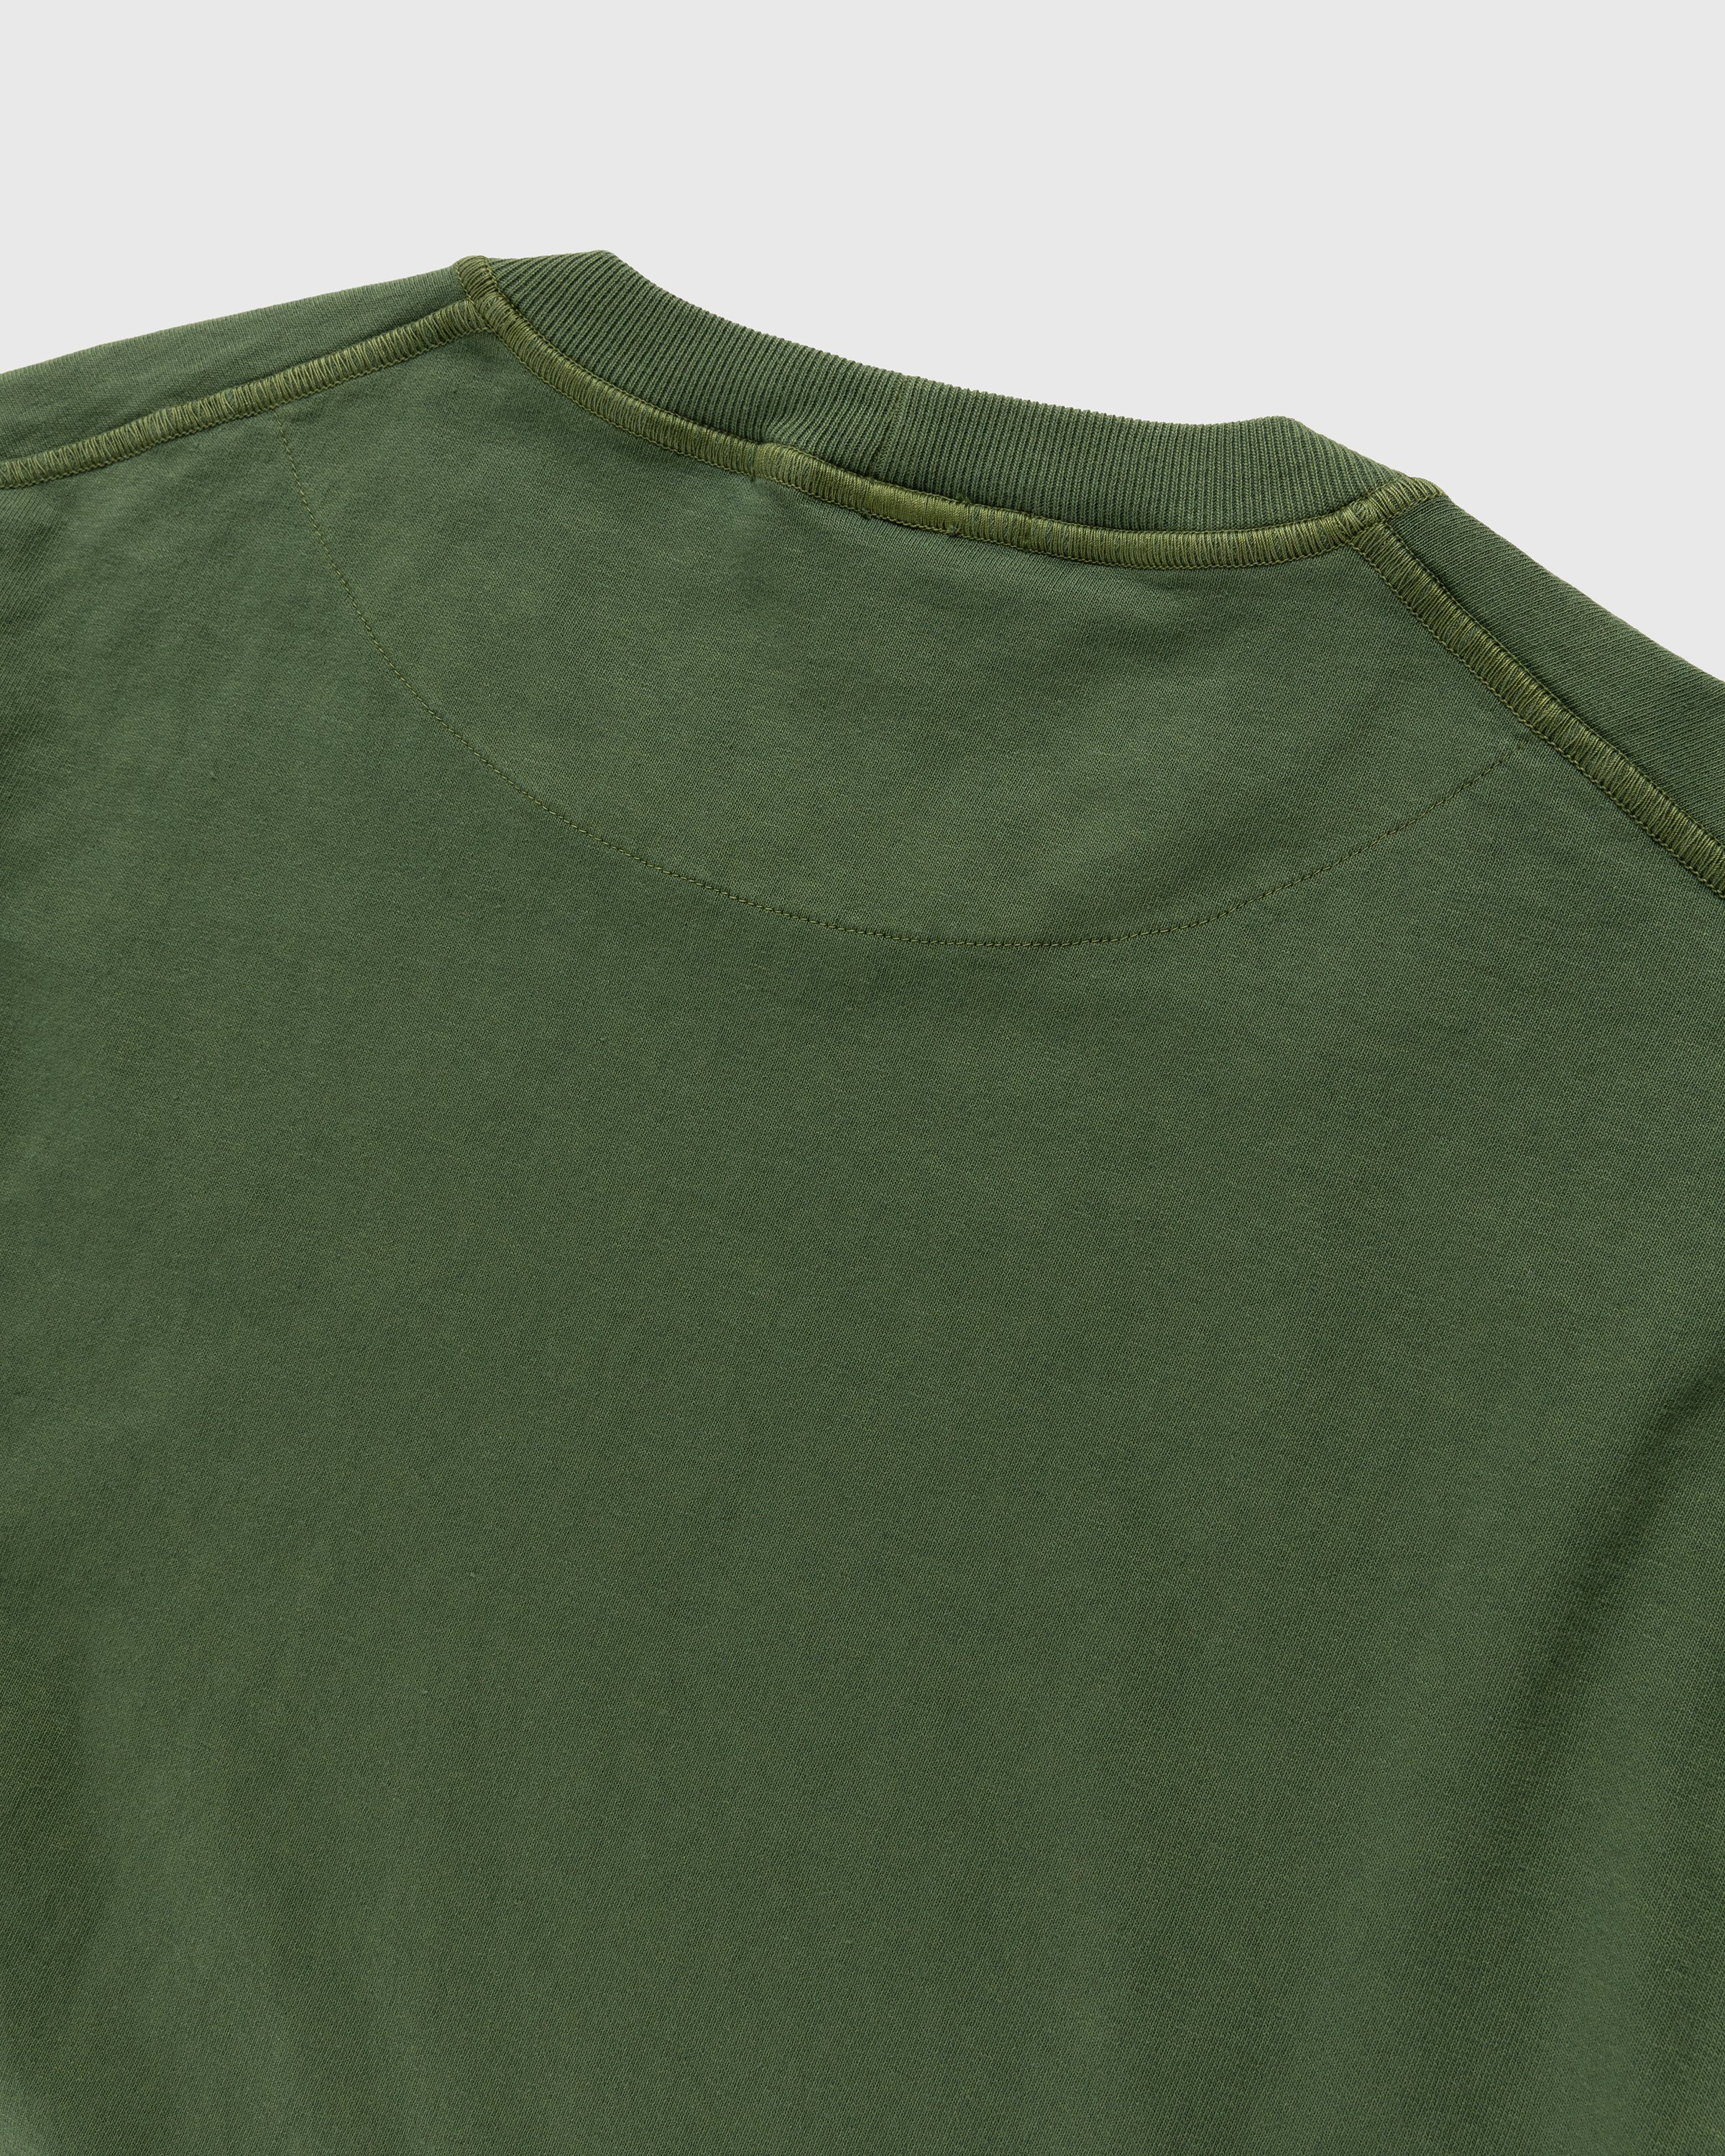 Stone Island - Fissato Longsleeve T-Shirt Olive - Clothing - Green - Image 5